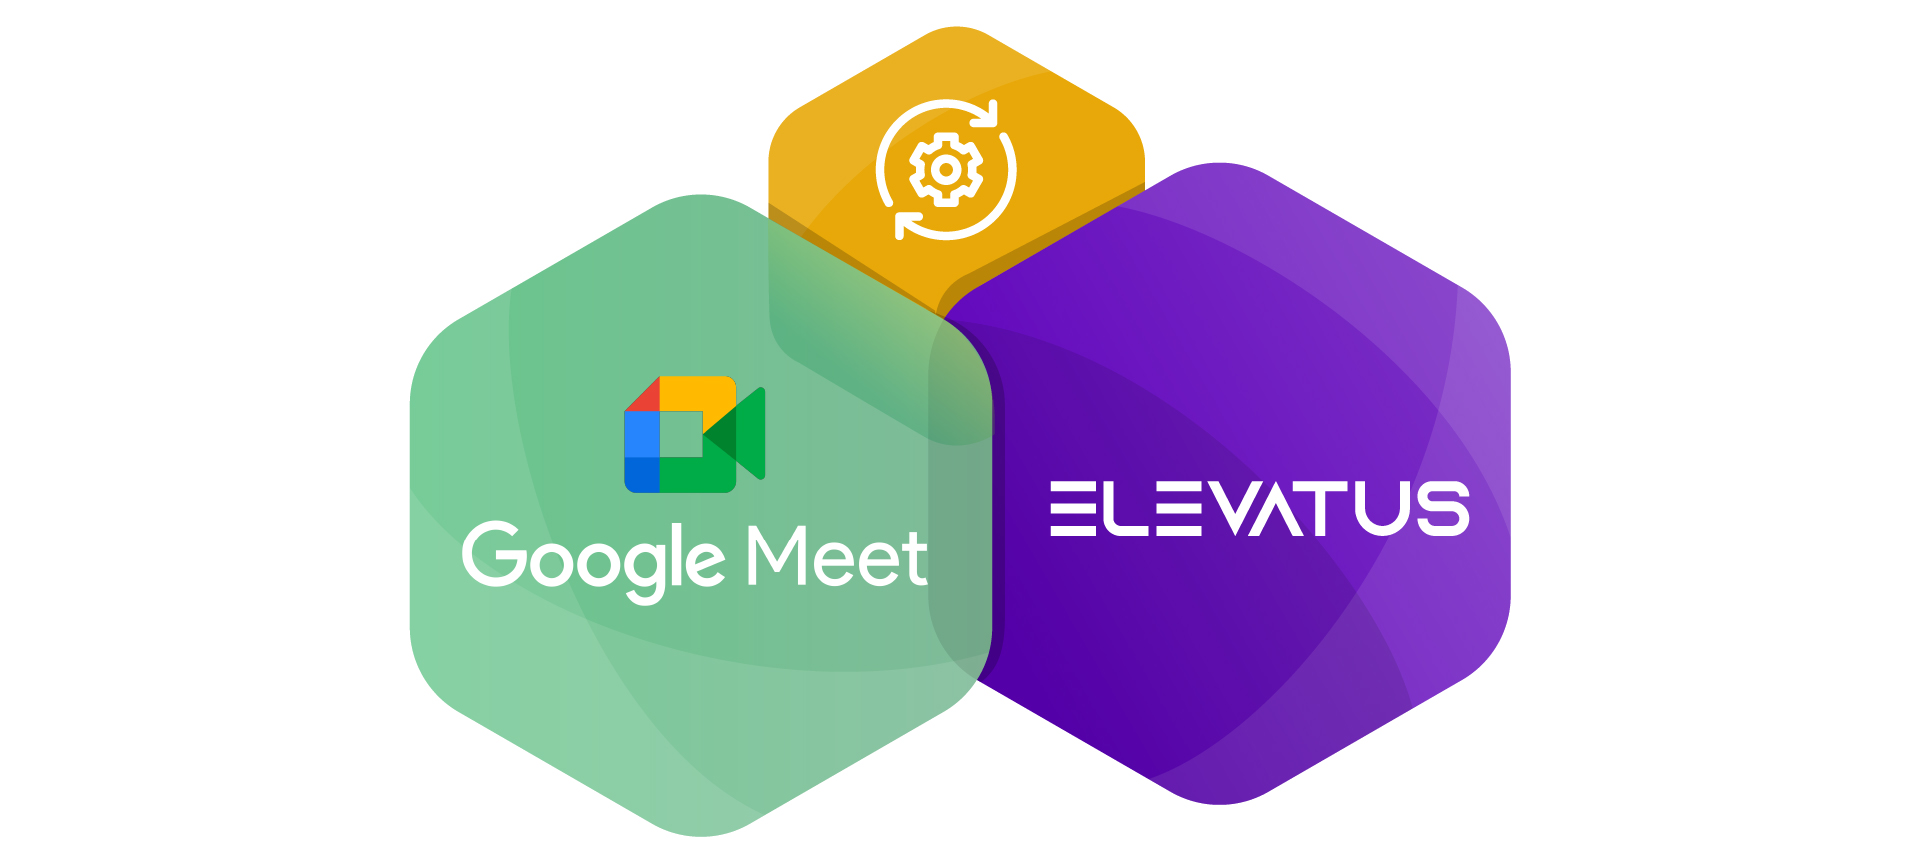 Google Meet integration